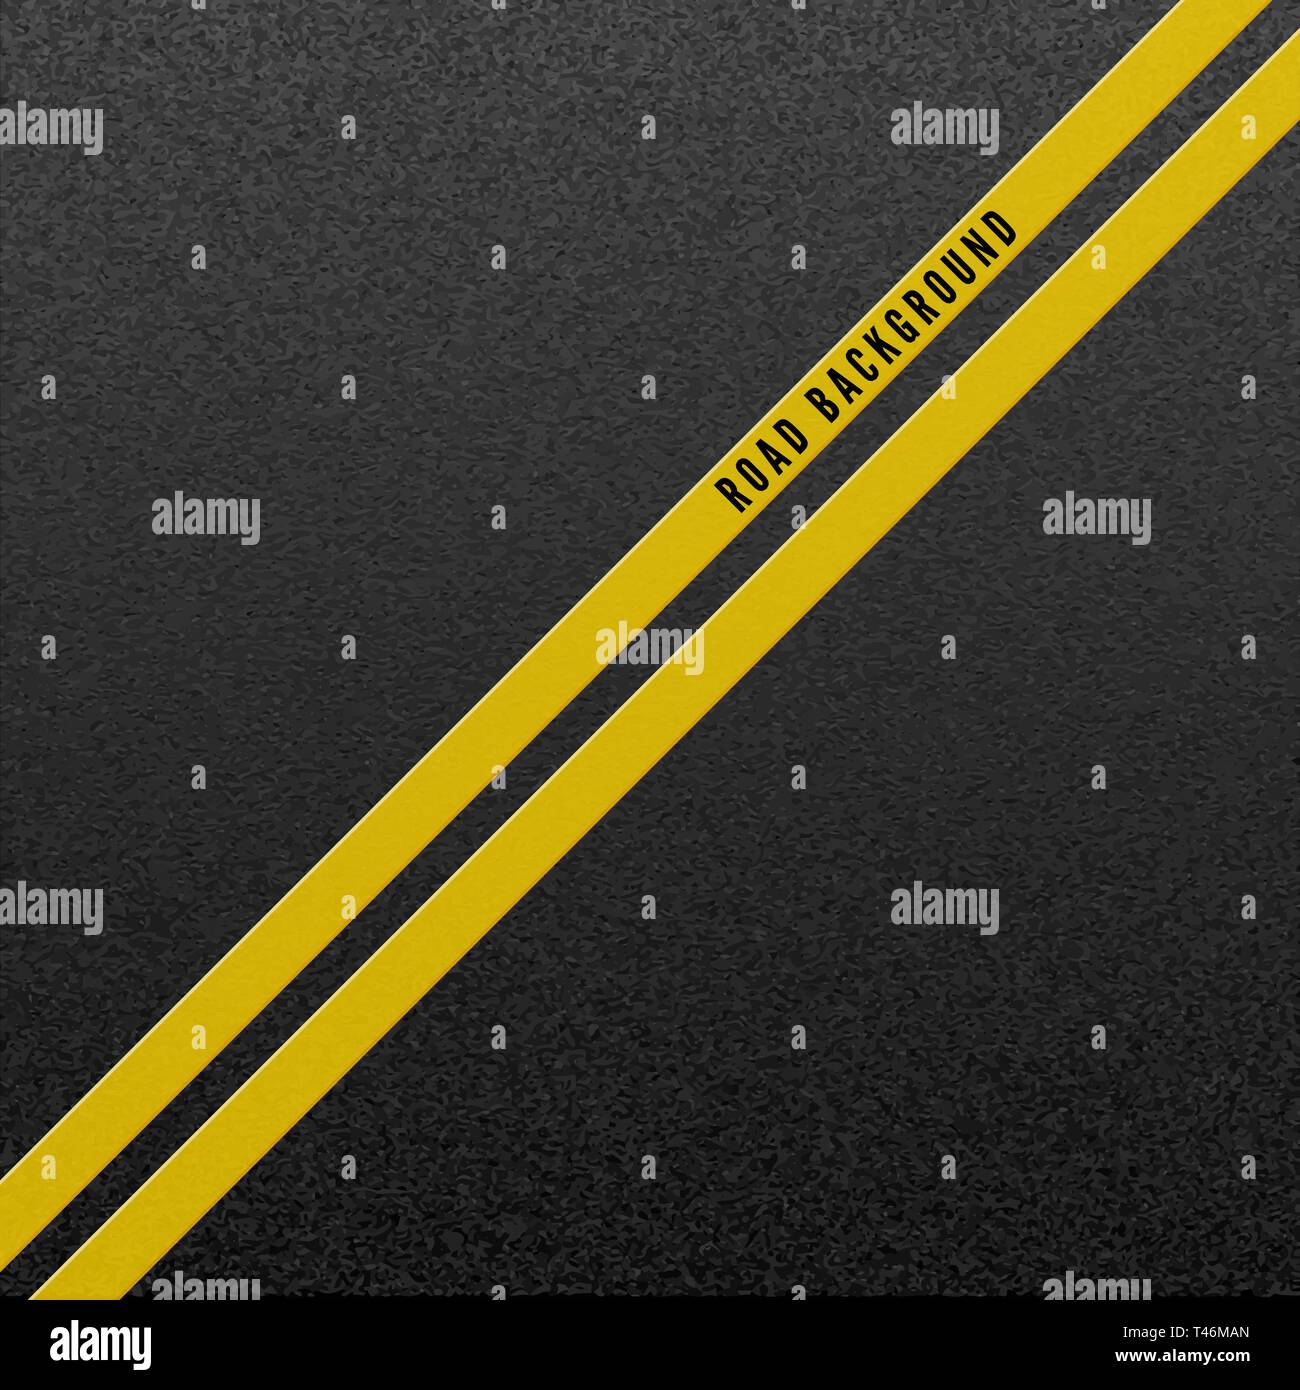 Abstrakte Straße Hintergrund. Struktur der körnigen Asphalt. Asphalt Textur mit zwei gelbe Linie signalisieren. Vector Illustration Stock Vektor